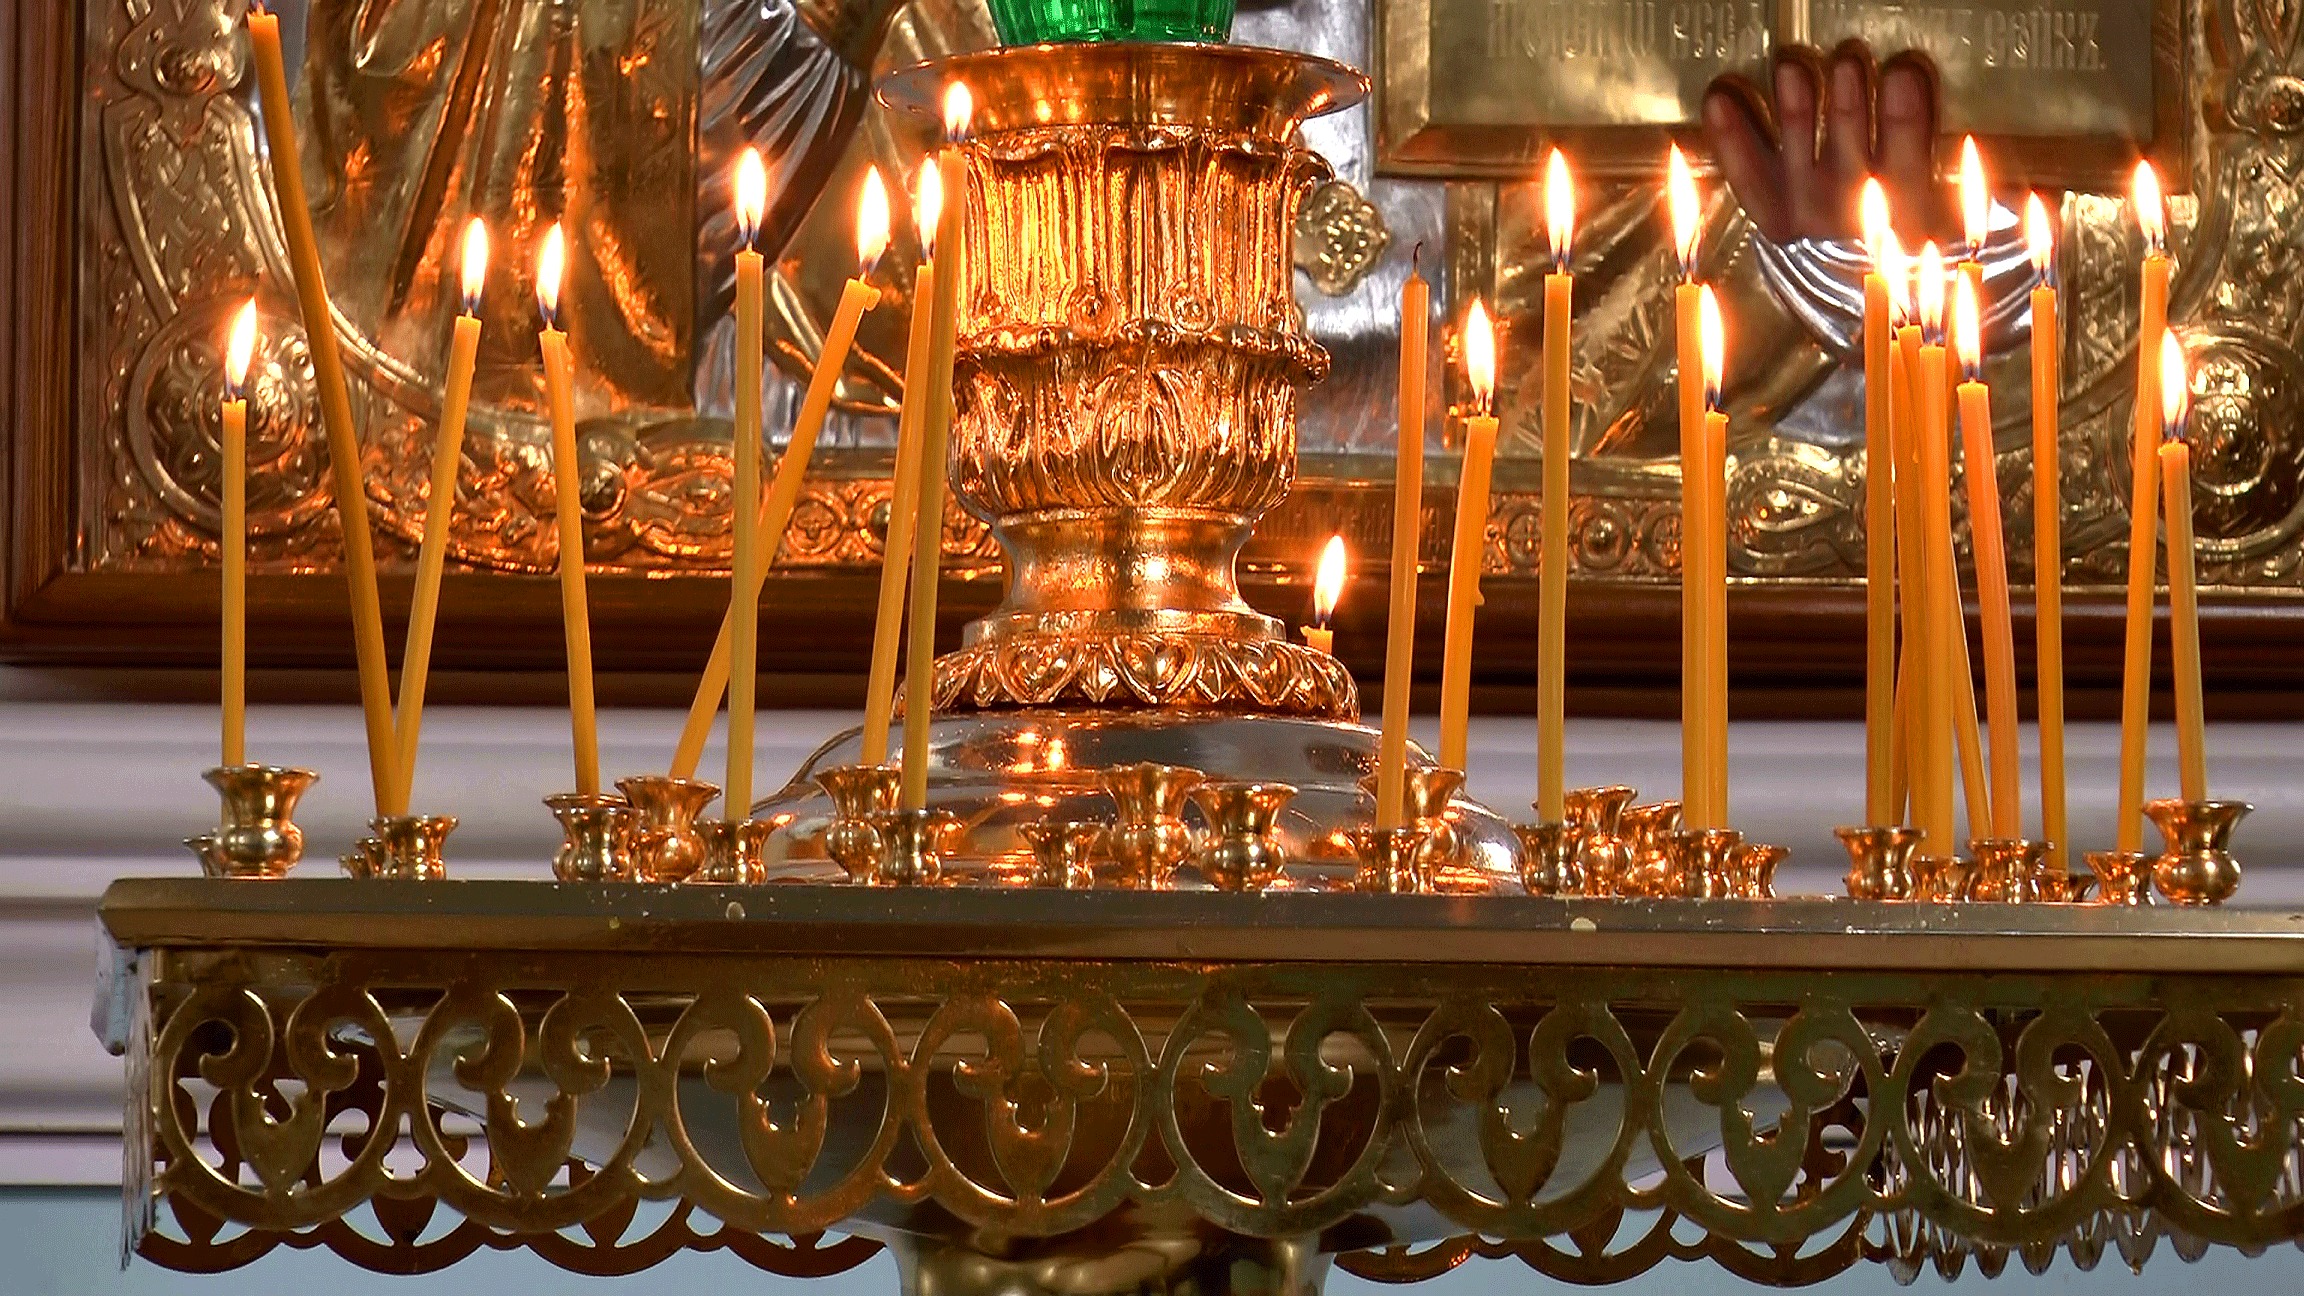 Горящие свечи в церкви. Свечи в церкви. Подсвечник в храме. Горящие свечи в храме. Канделябр в церкви.